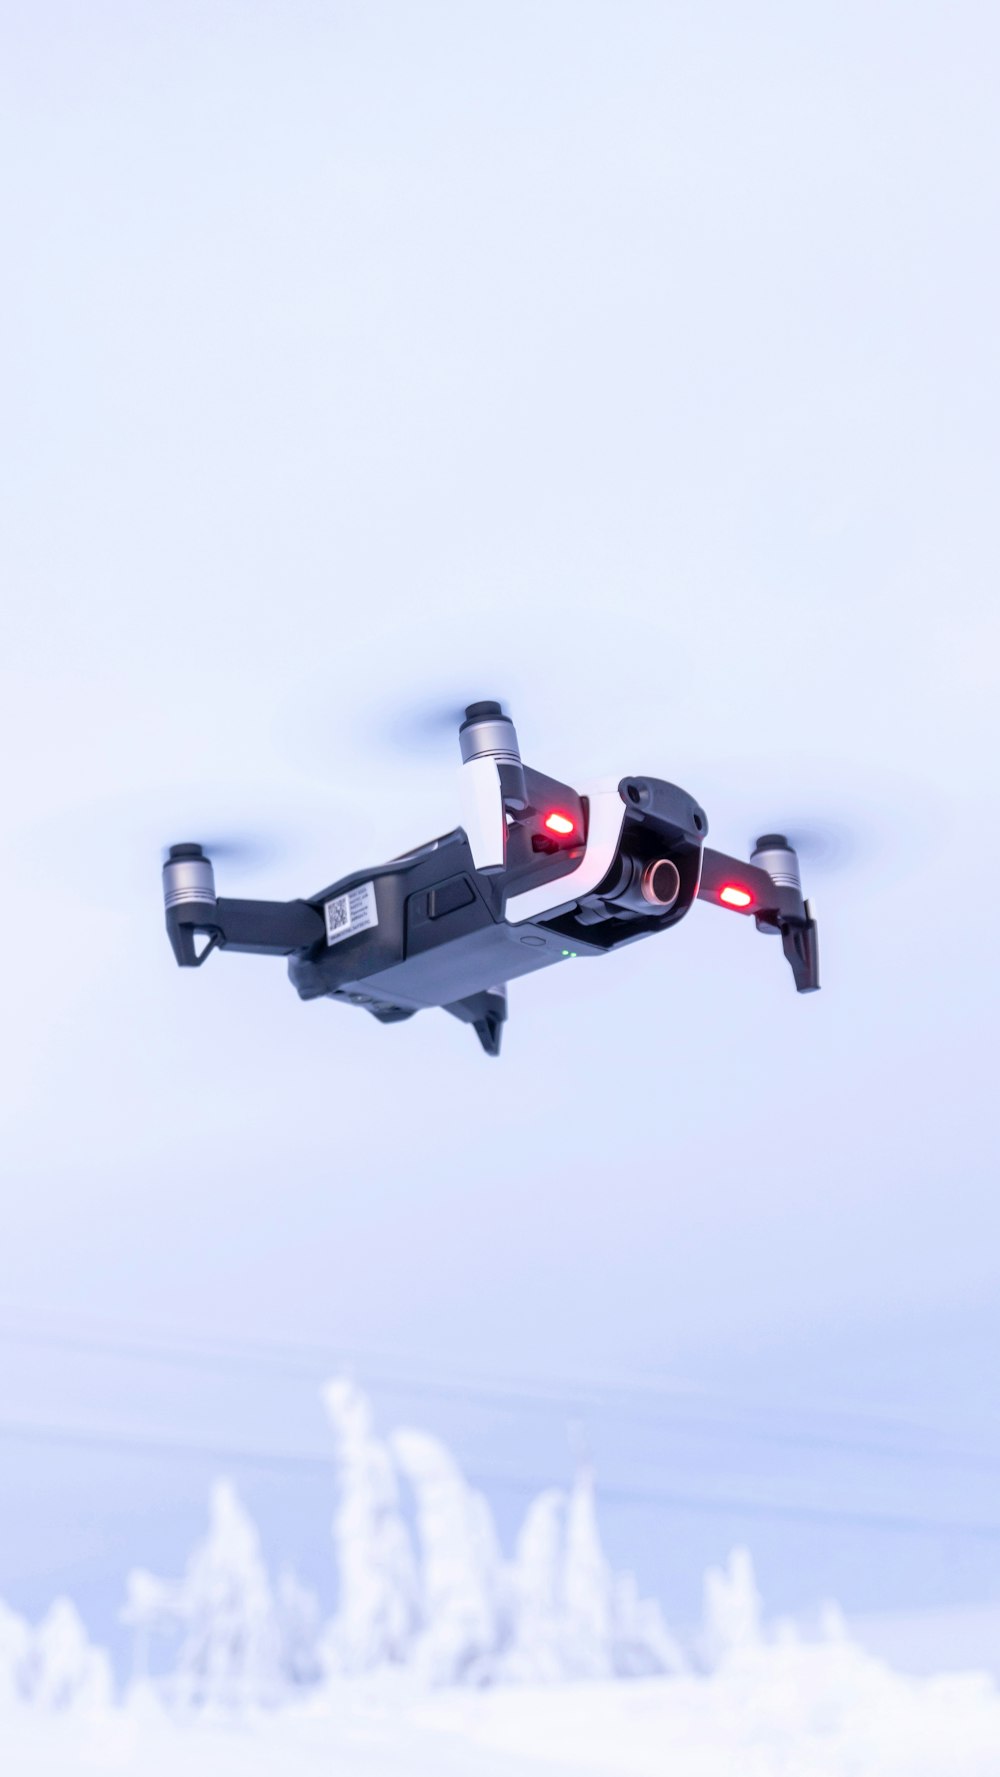 Schwarz-roter Drohnenflug